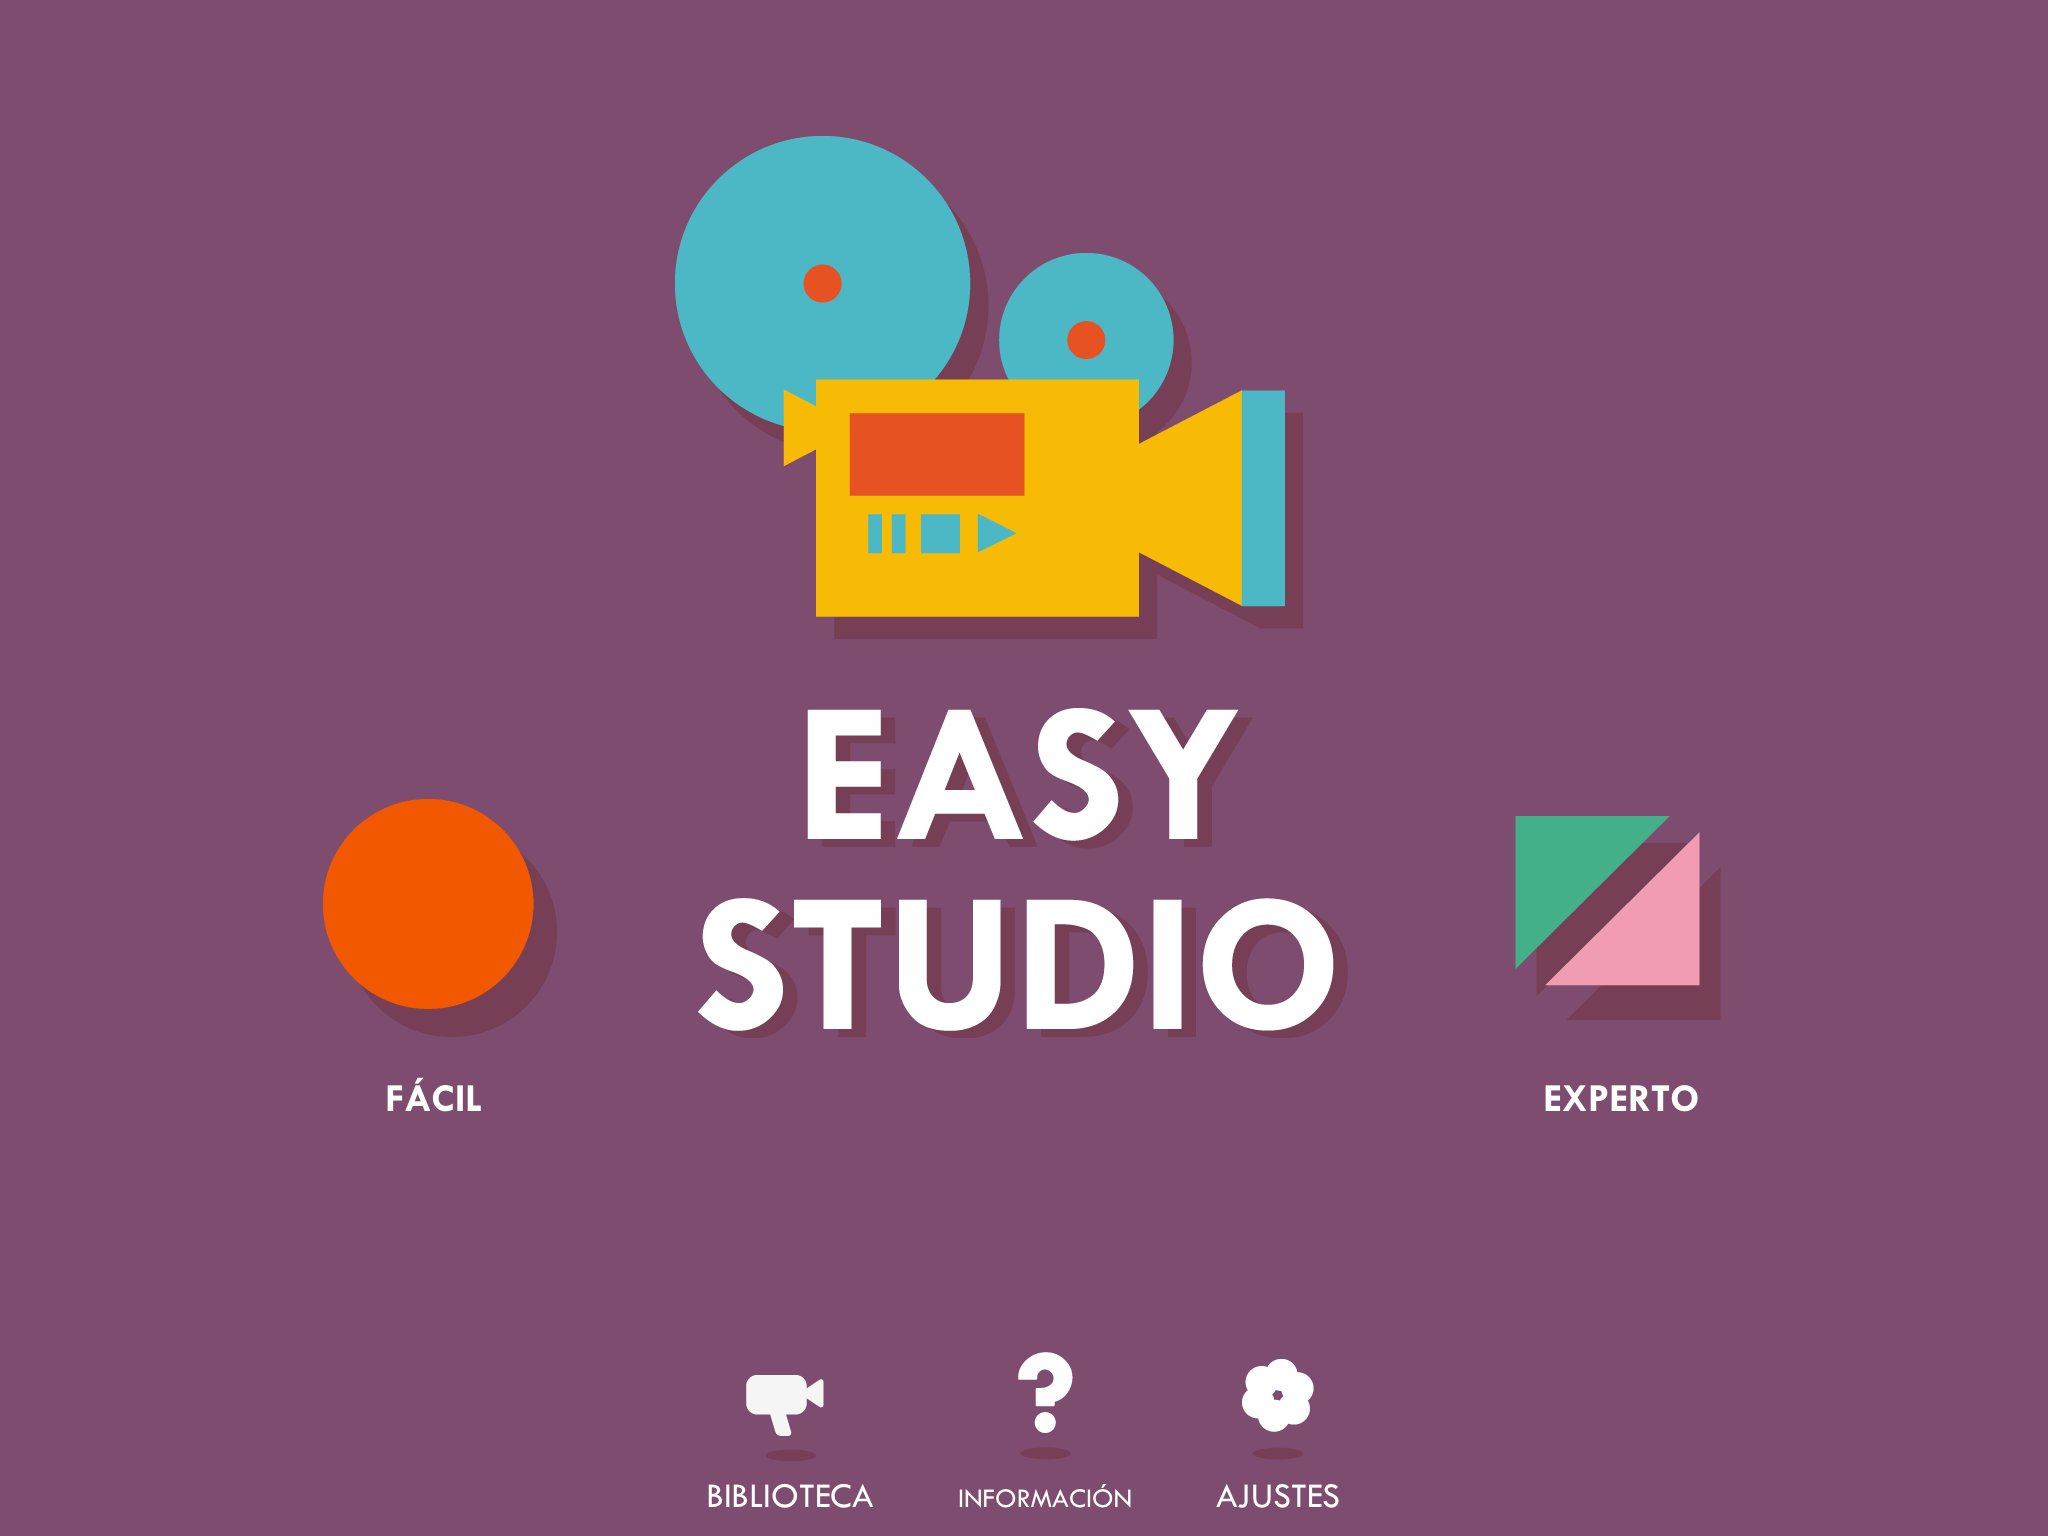 Easy Studio